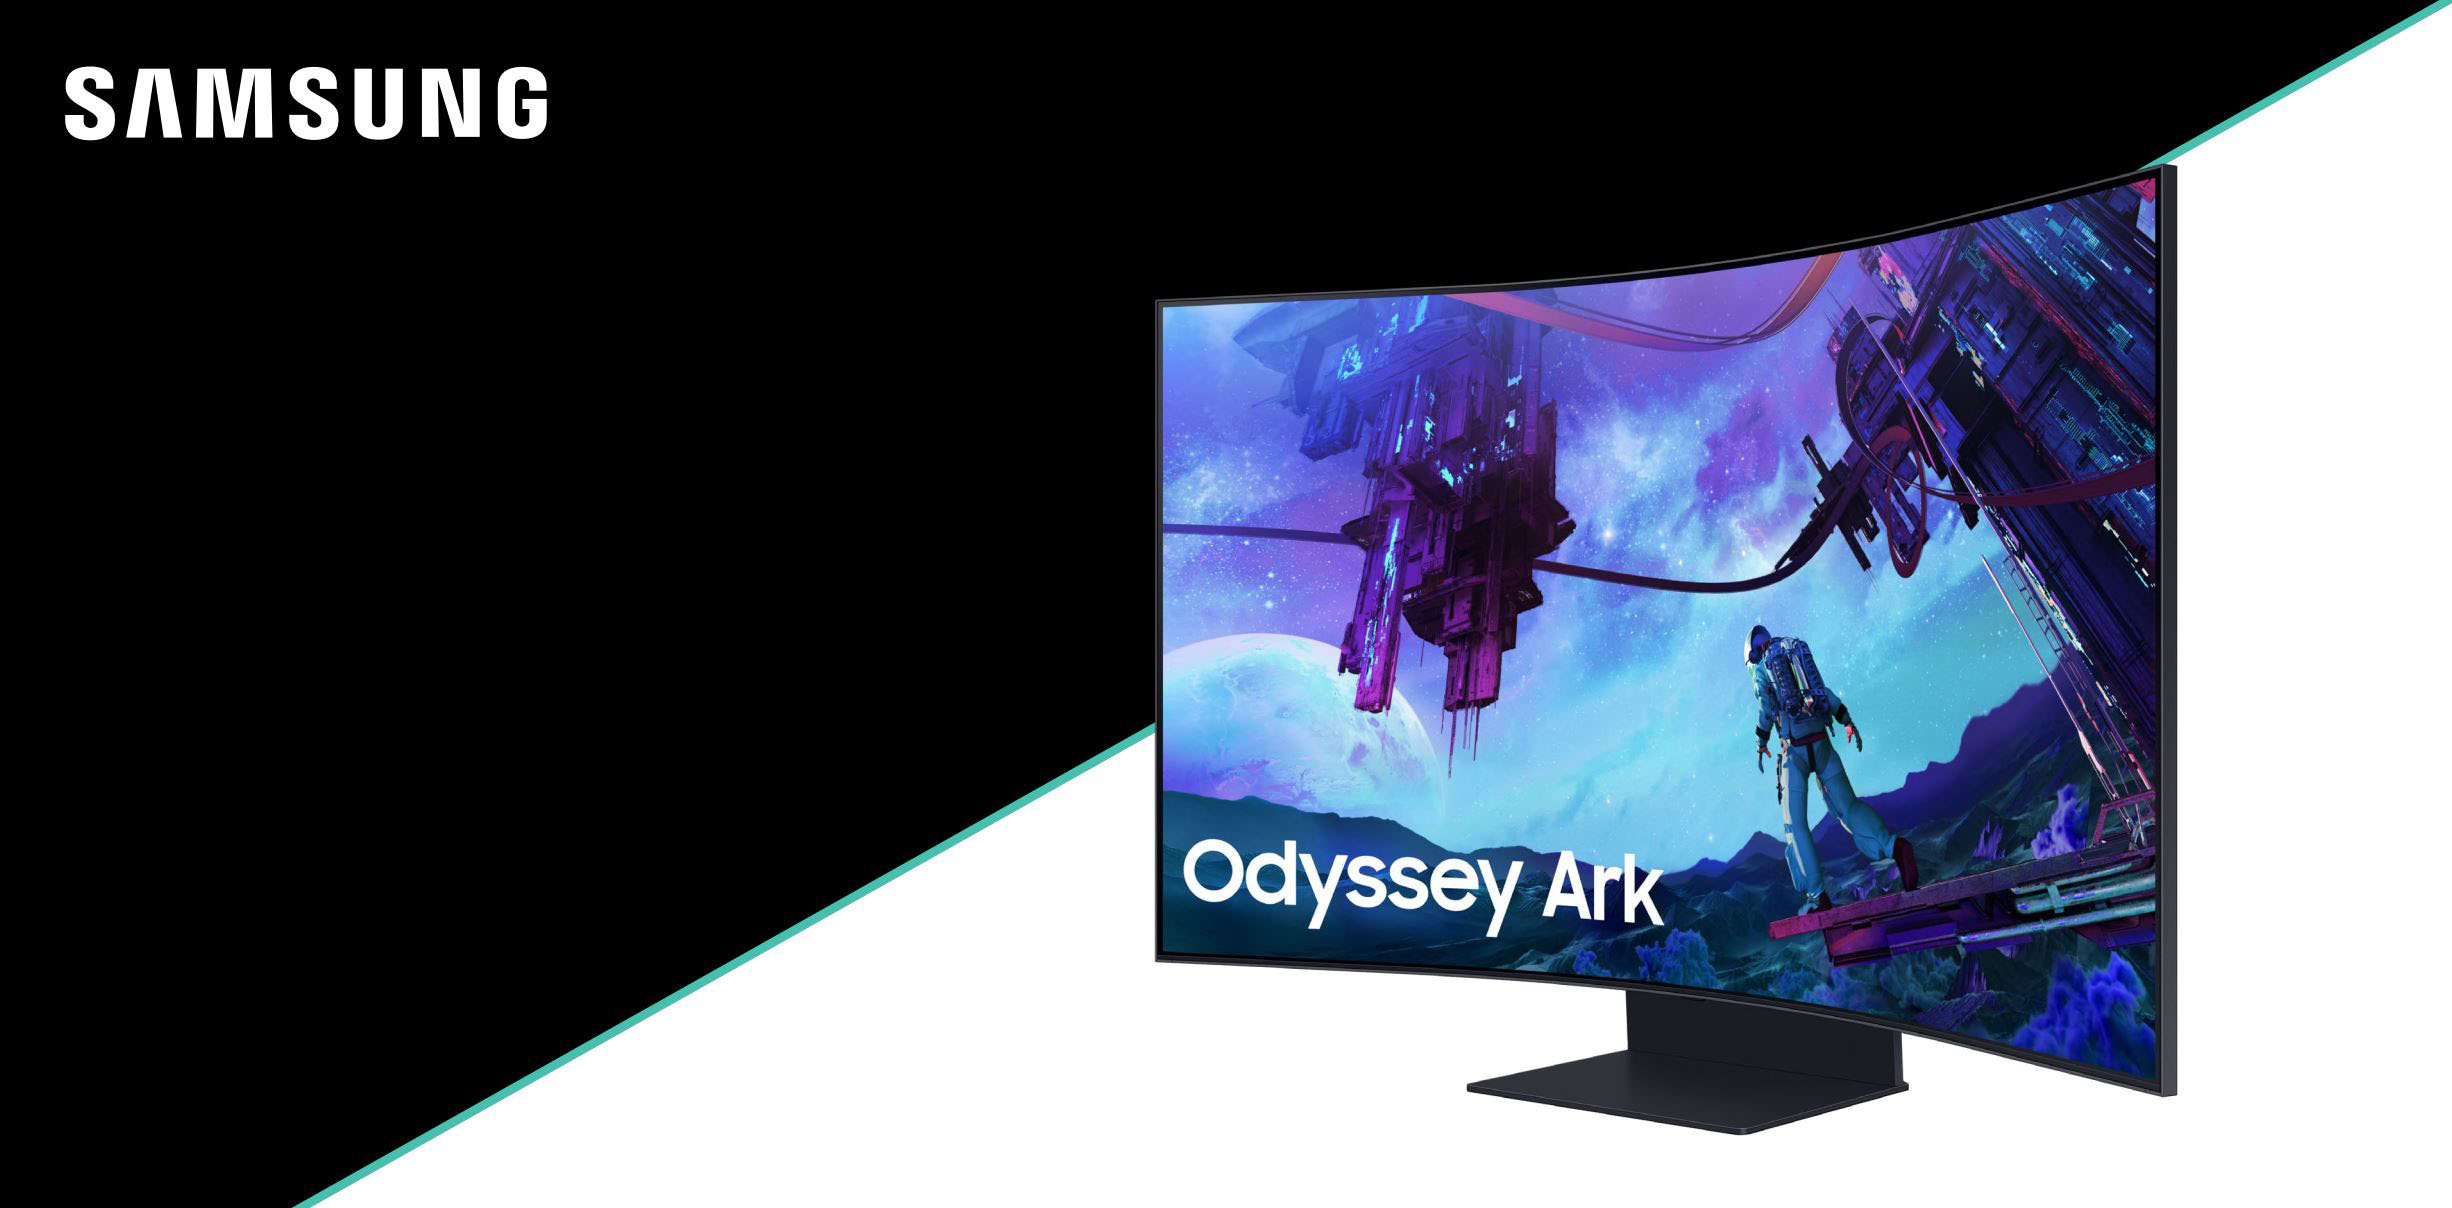 55 Odyssey Ark 2nd Gen. 4K UHD 165Hz 1ms(GtG) Quantum Mini-LED